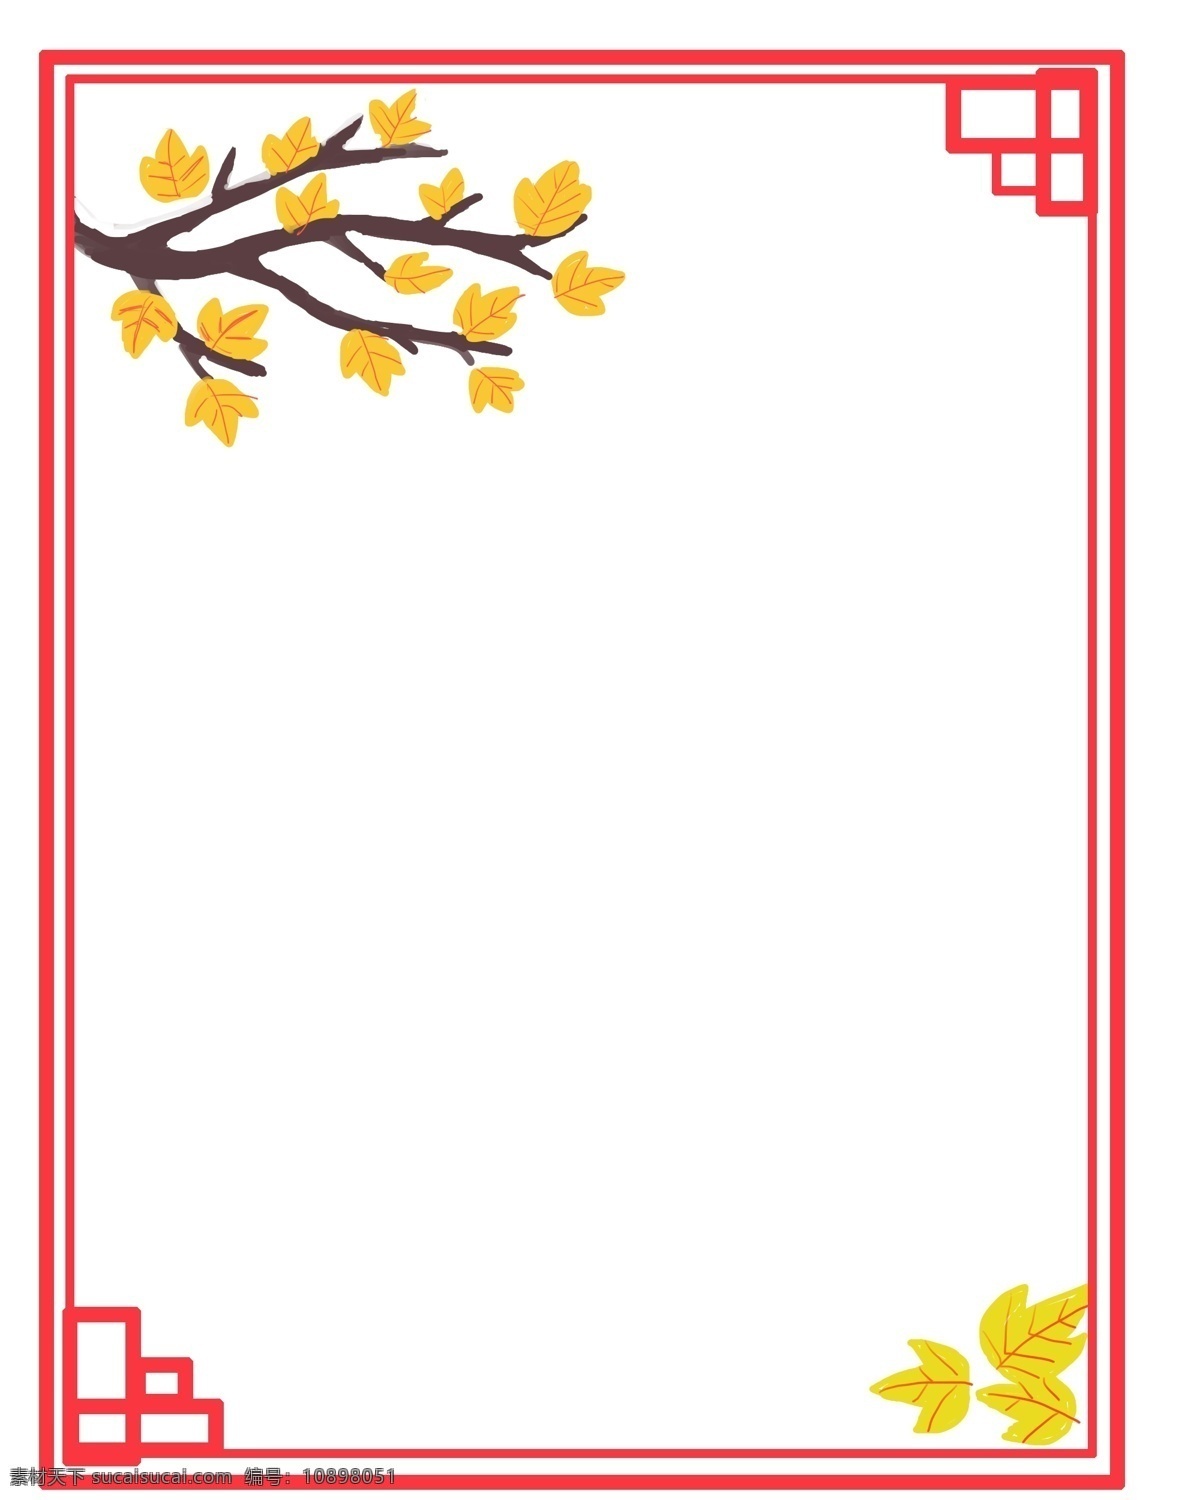 冬天 里 带 叶子 树枝 画面 主体 左上角 枝条 右下角 落叶 组成 上 黄色 树叶 看出 红色 叶脉 条 落 满 白色 雪花 寓意是冬天